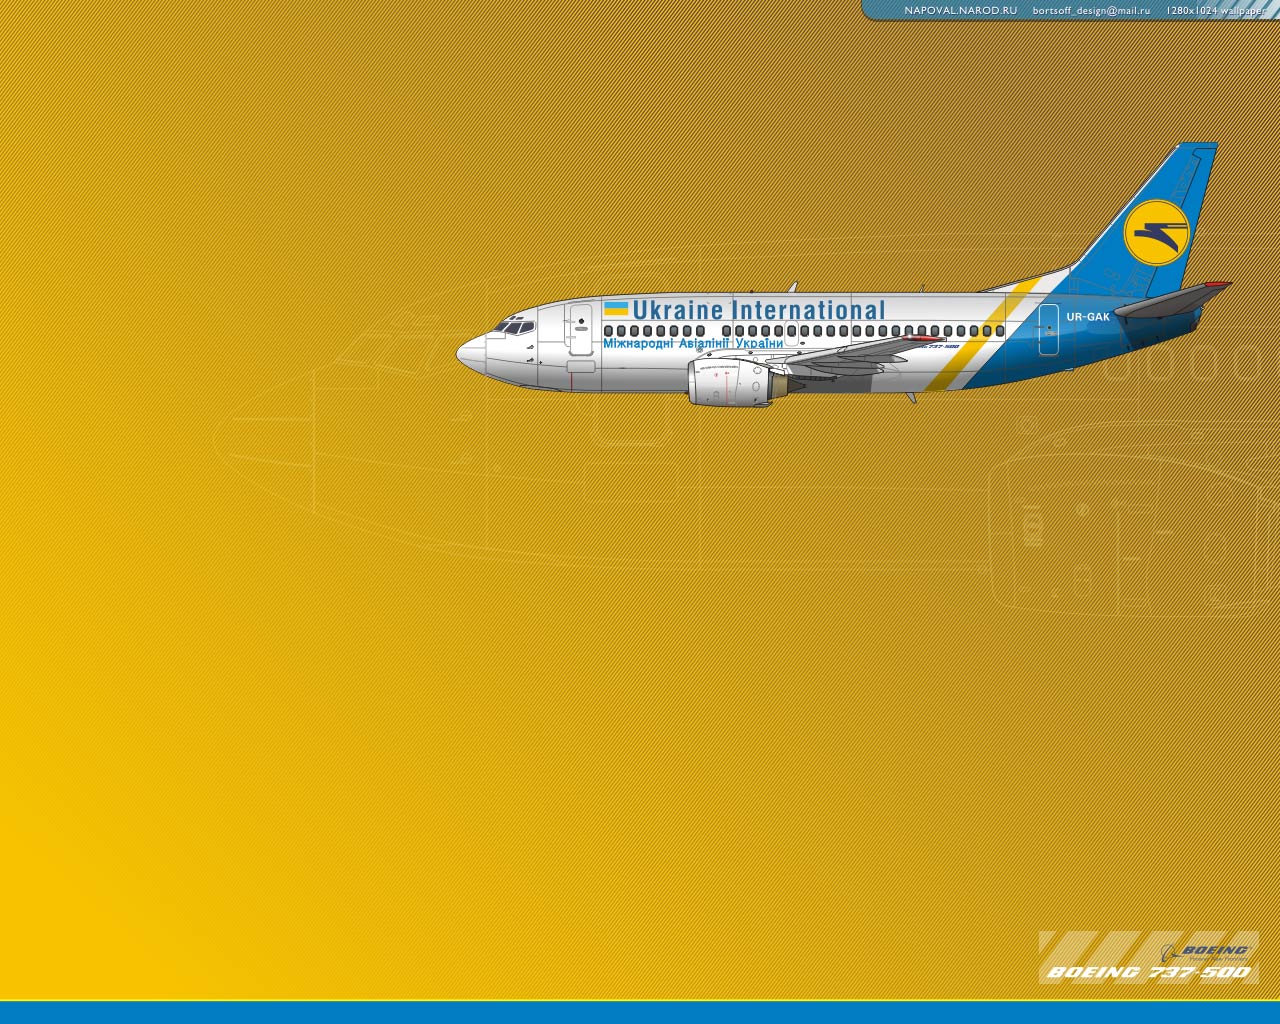 Обои для рабочего стола. UKRAINE INTERNATIONAL Boeing 737 wallpaper 1280x1024